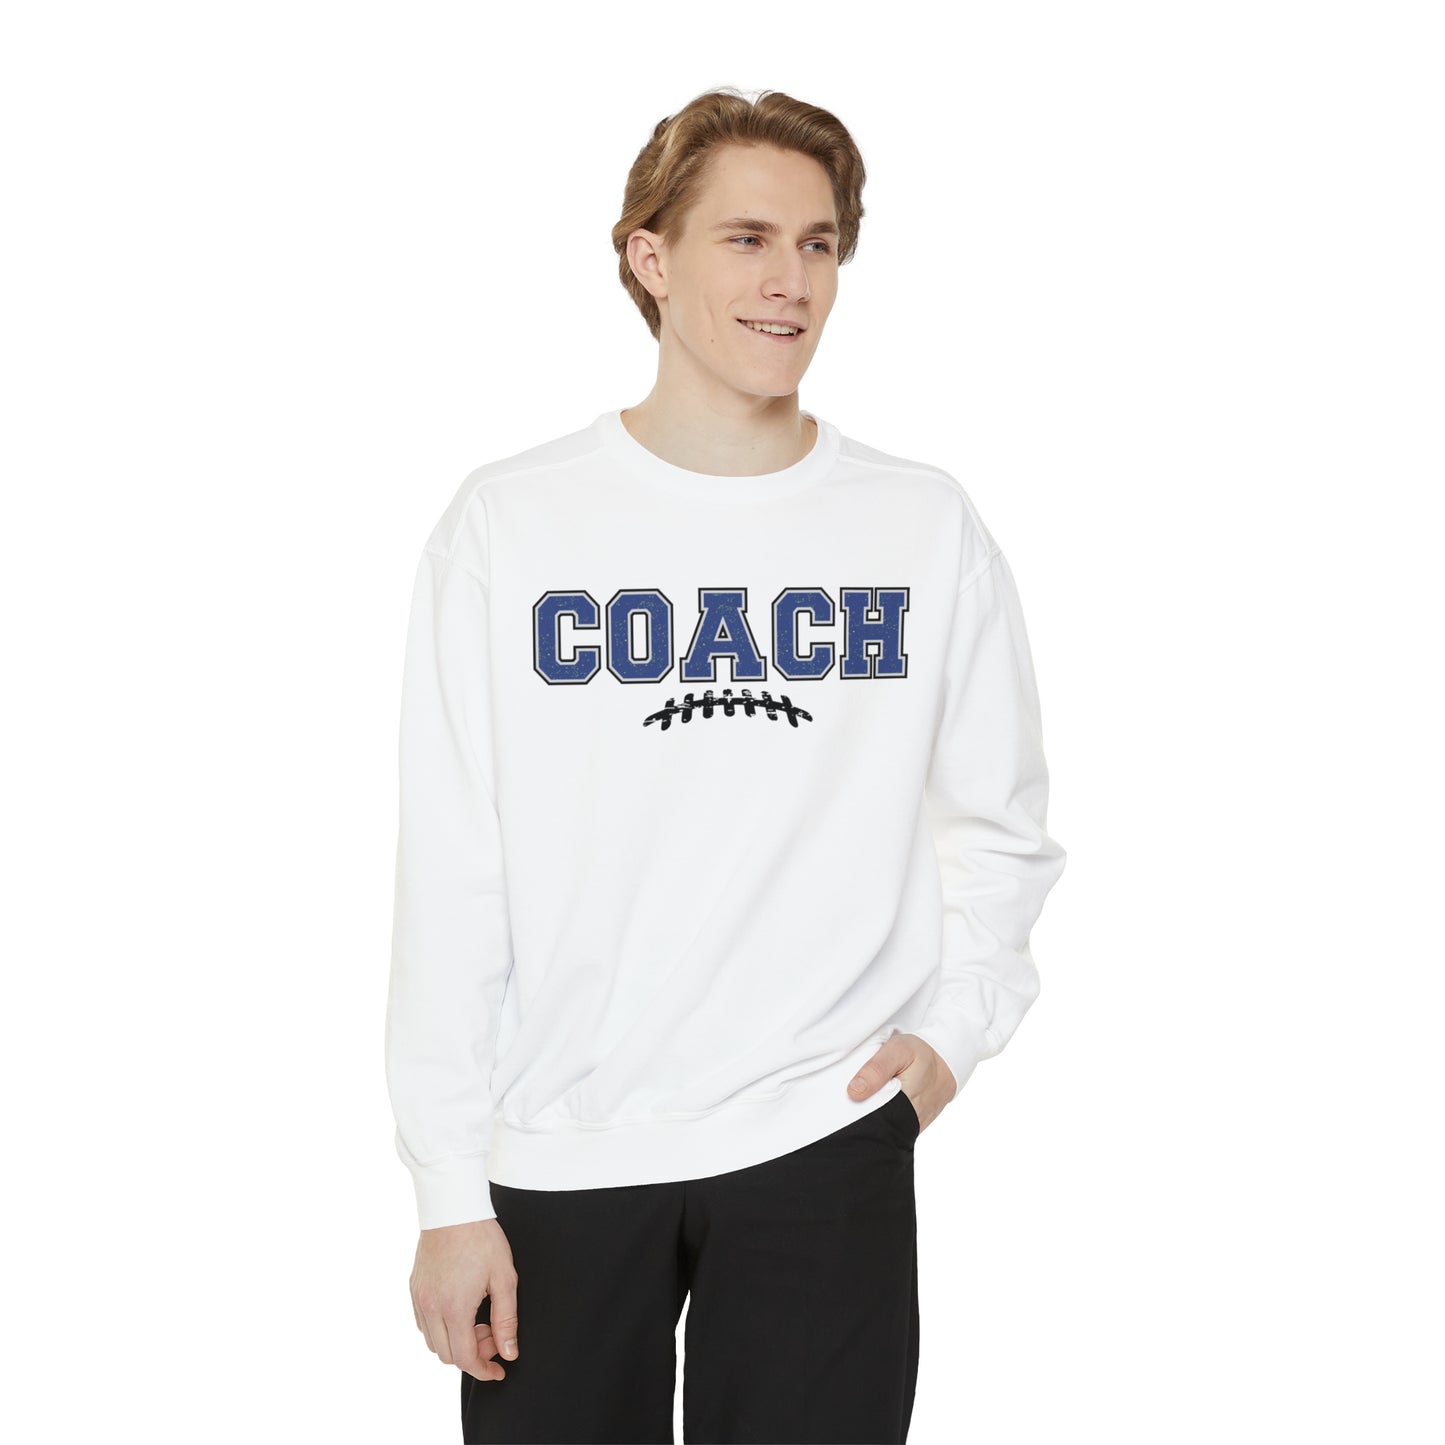 Gridiron Glory Premium Coach Men's Comfort Colors Sweatshirt